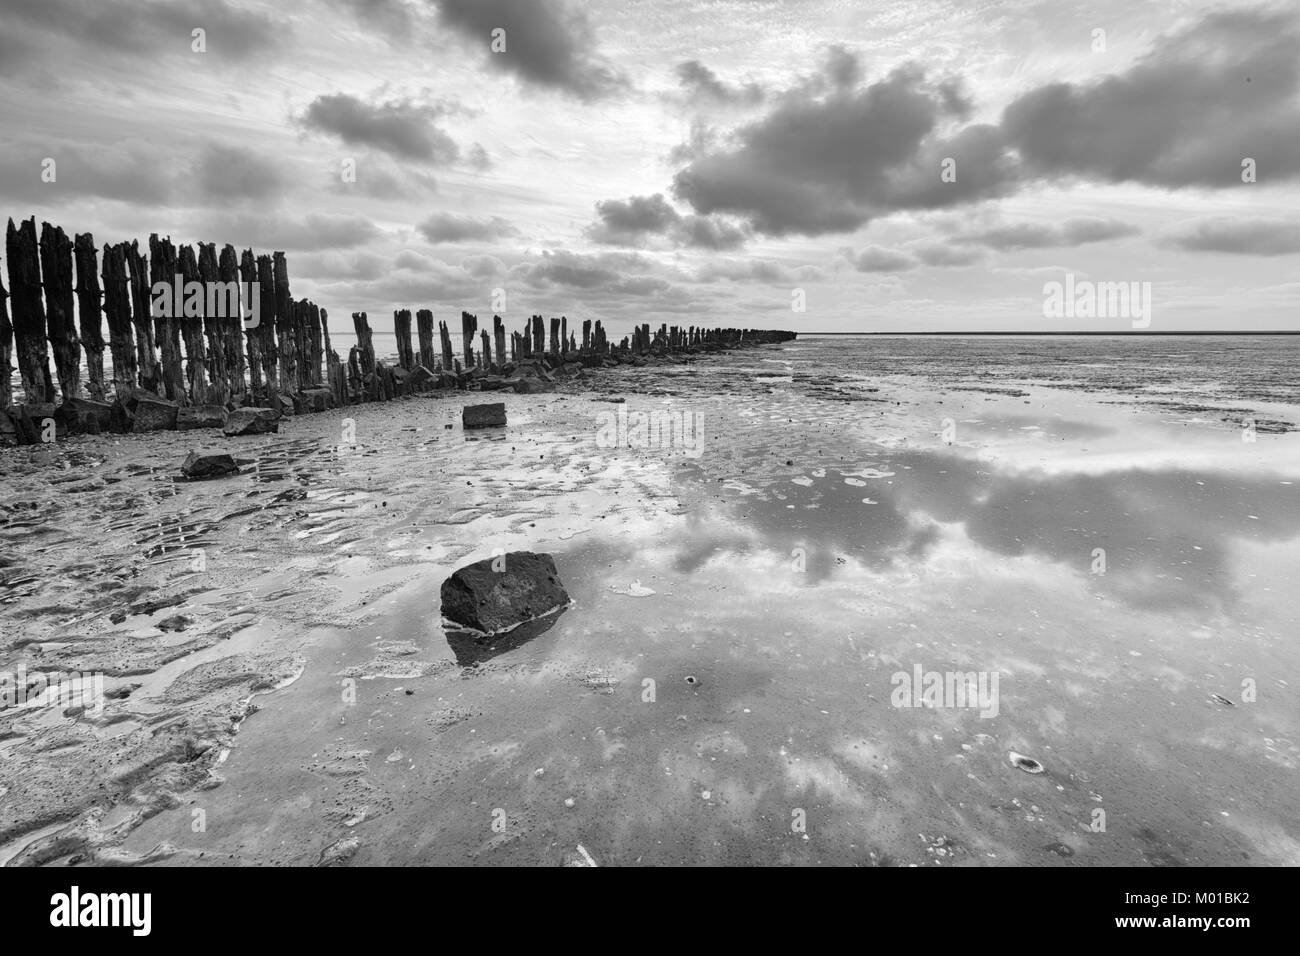 Image en noir et blanc de paysage des plaines de boue d'un ciel partiellement obscurci, qui se reflète dans une une mer plate, avec de vieux poteaux en bois patiné. Banque D'Images